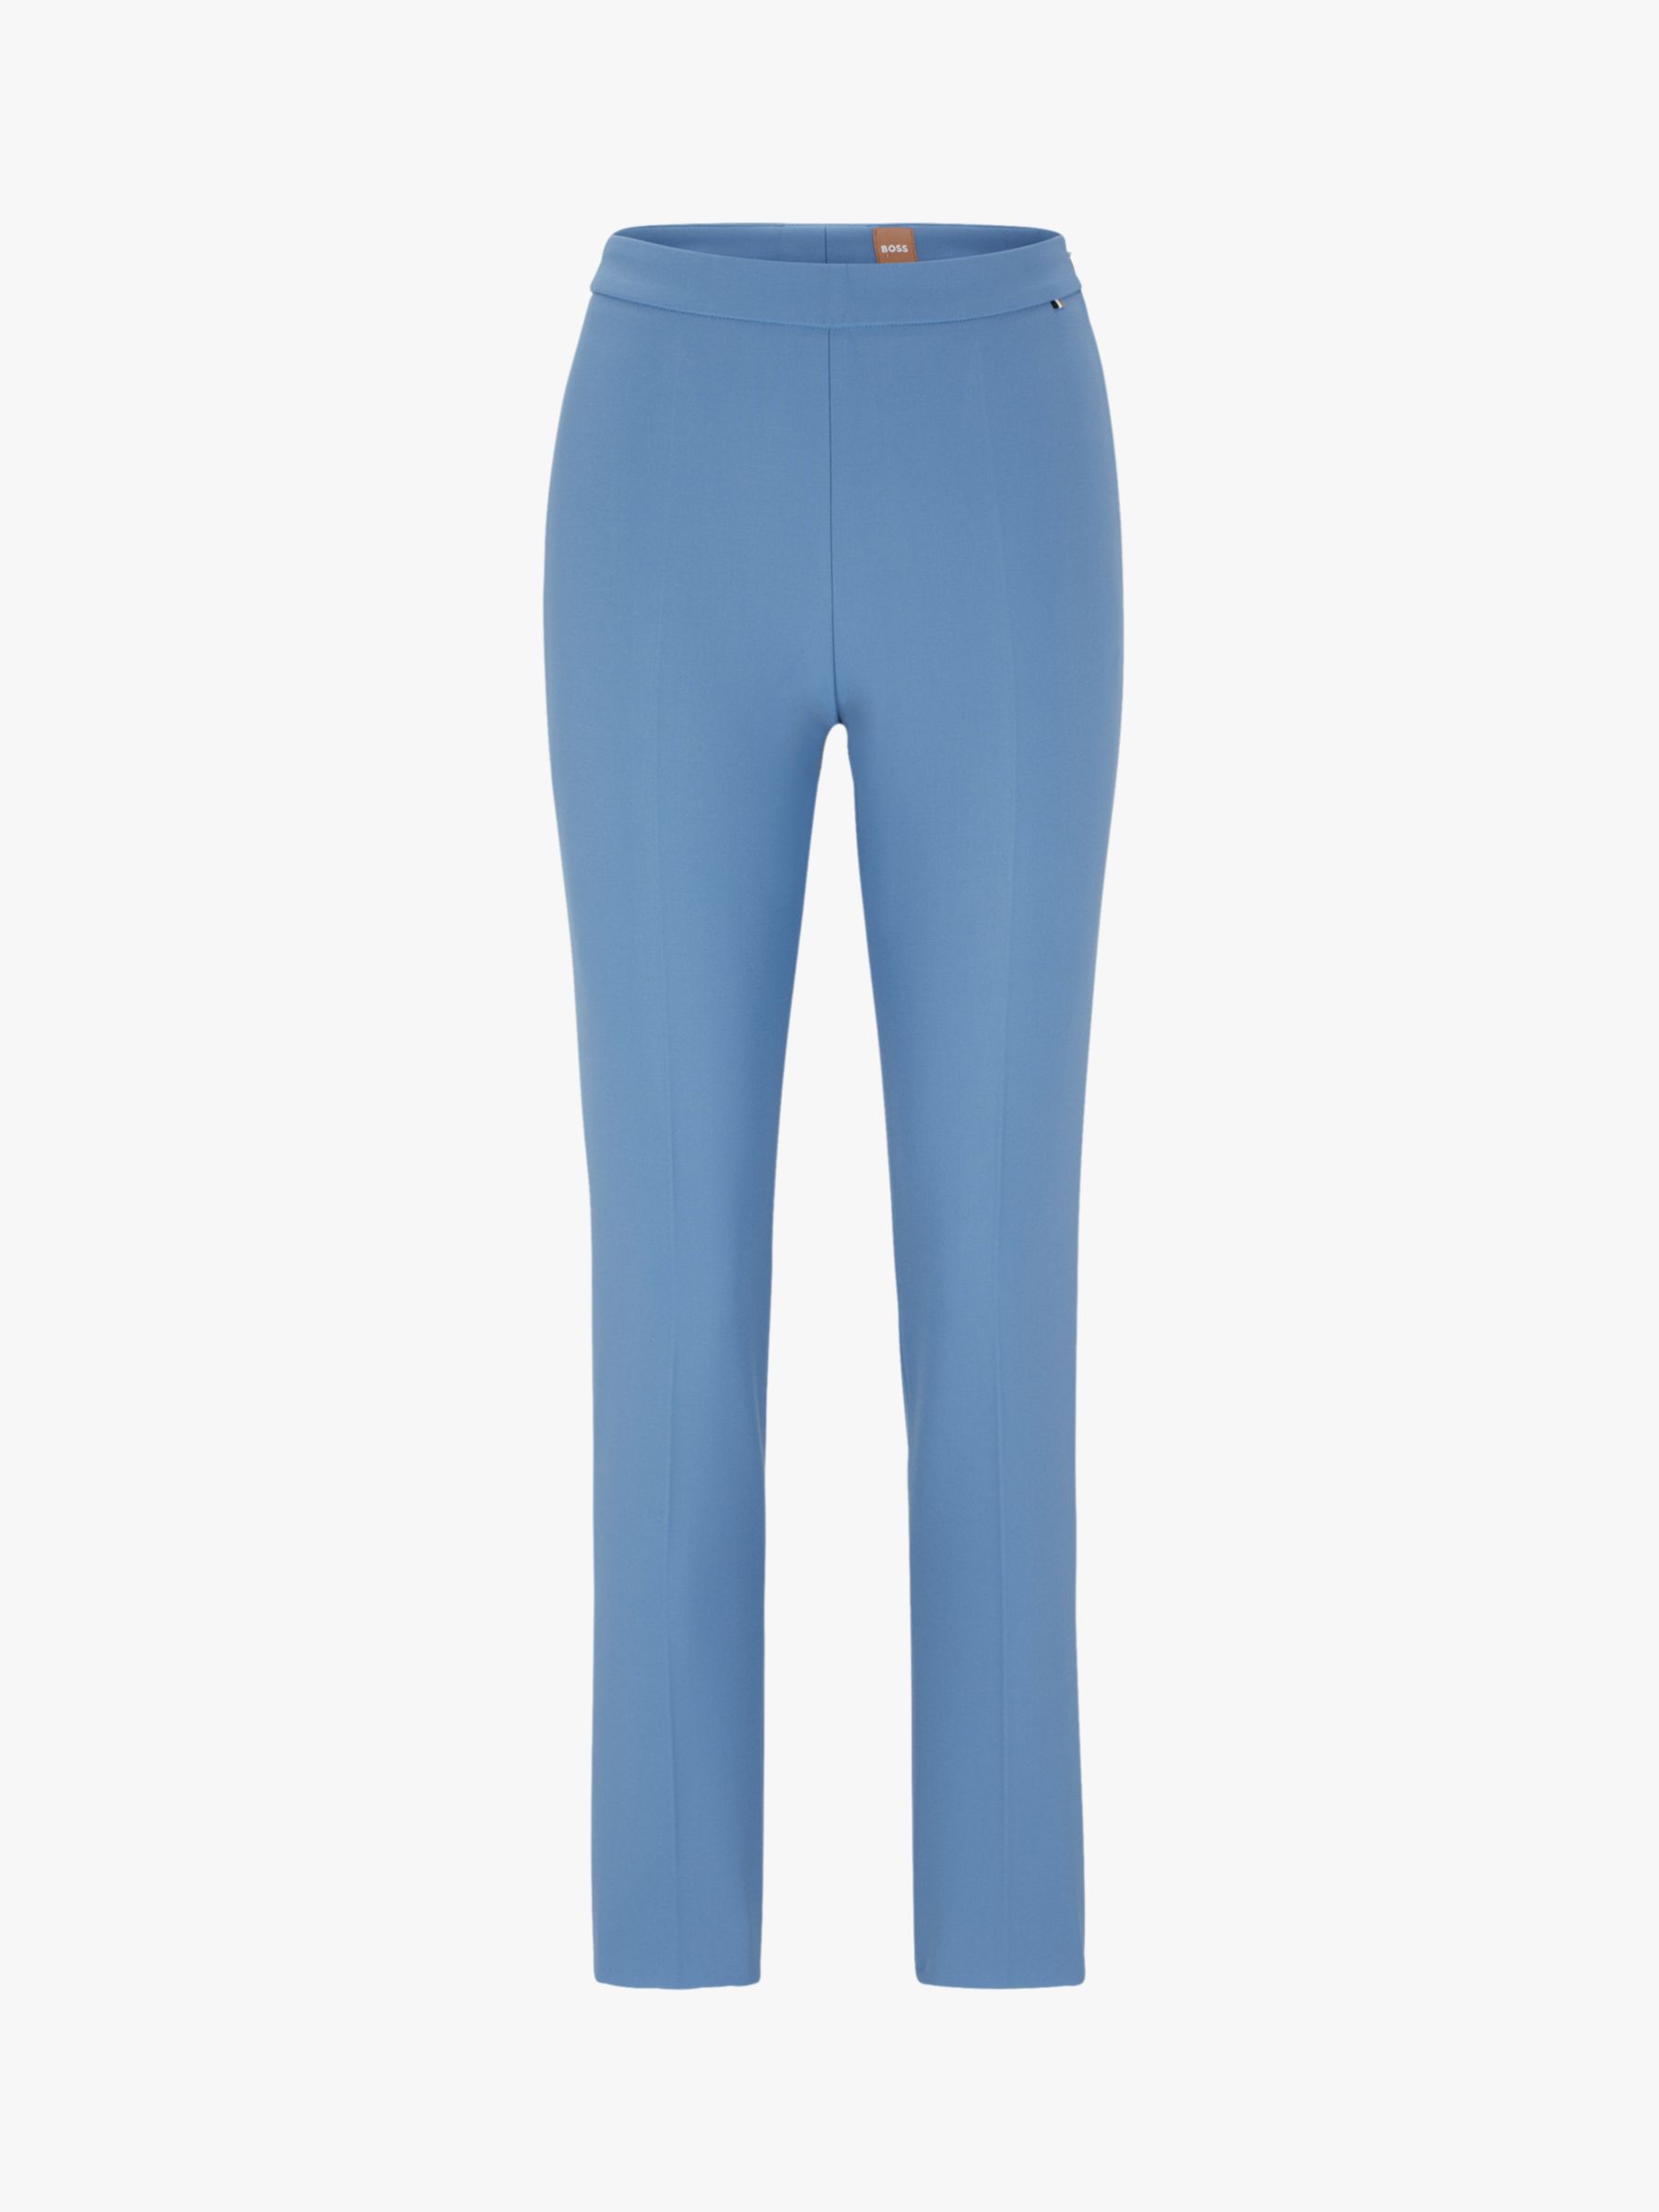 HUGO BOSS Tiluna Side Zip Trousers, Open Blue, 4